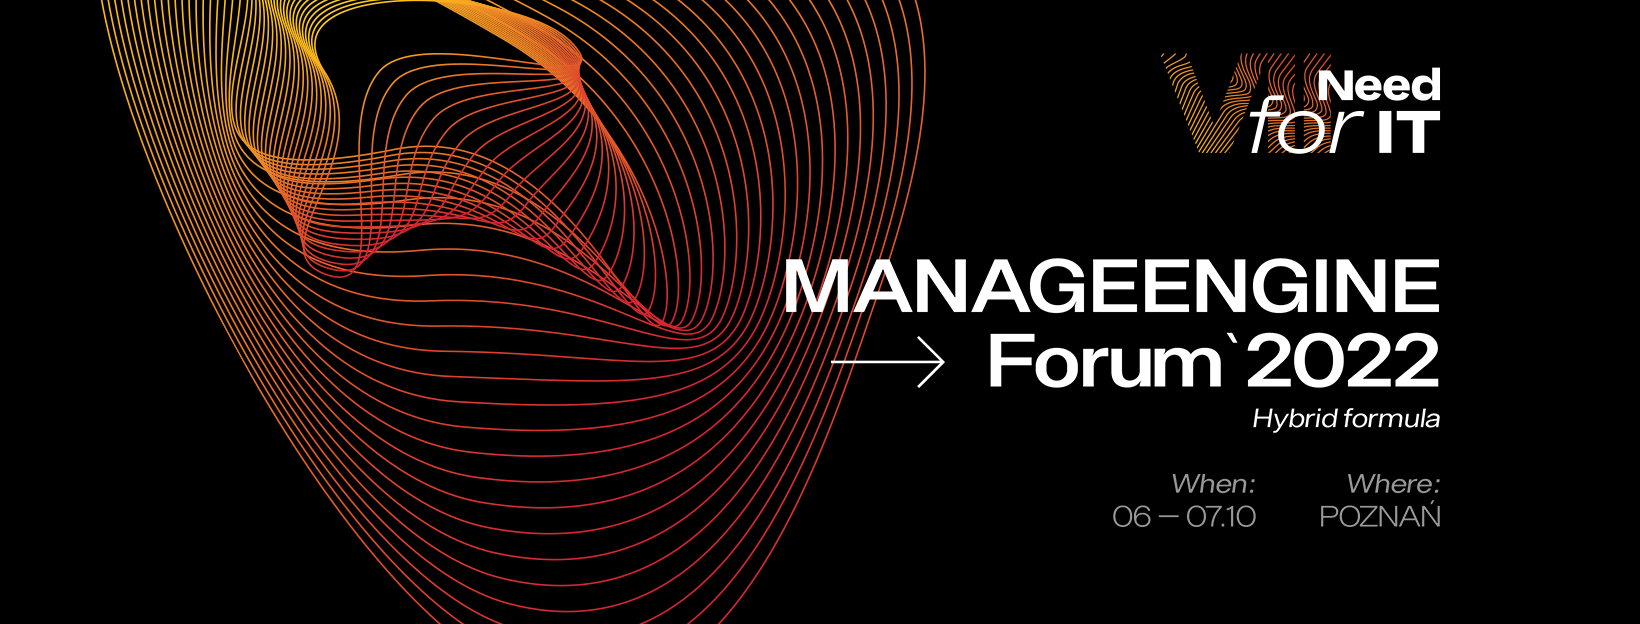 manageengine-forum-2022